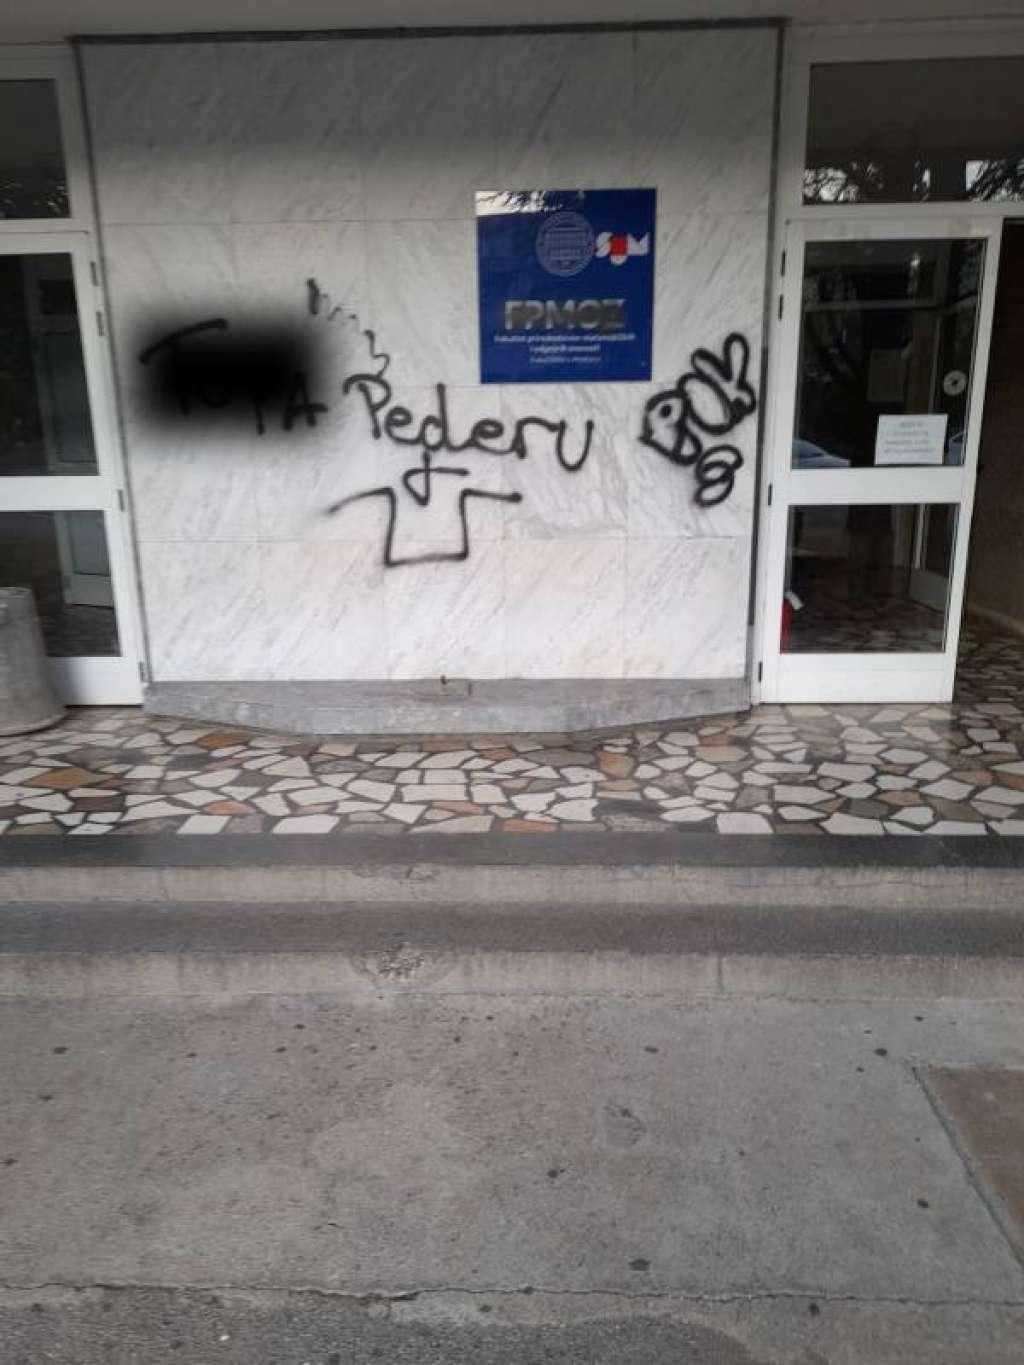 &lt;p&gt;SUM apelira na prestanak vandalizma u sveučilišnom kampusu&lt;/p&gt;
